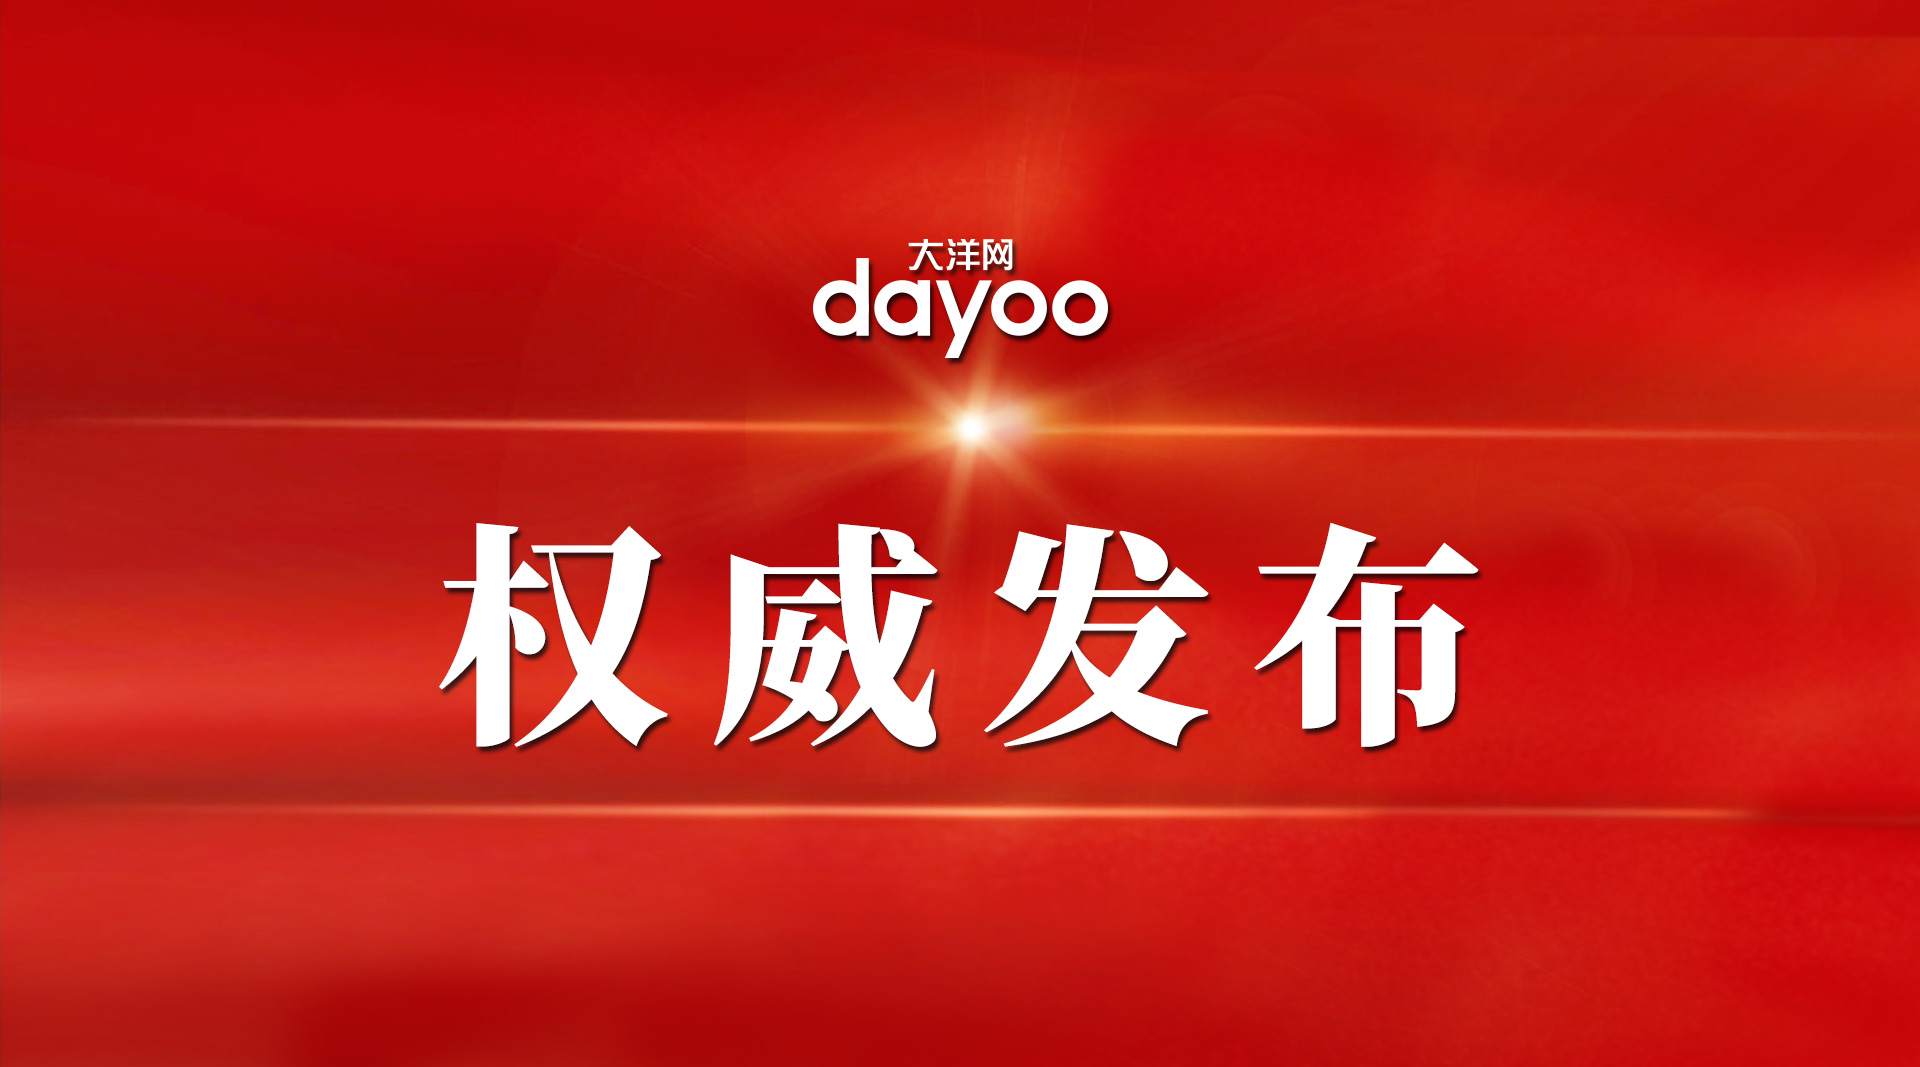 广东省人大常委会去年通过20件法规、决定